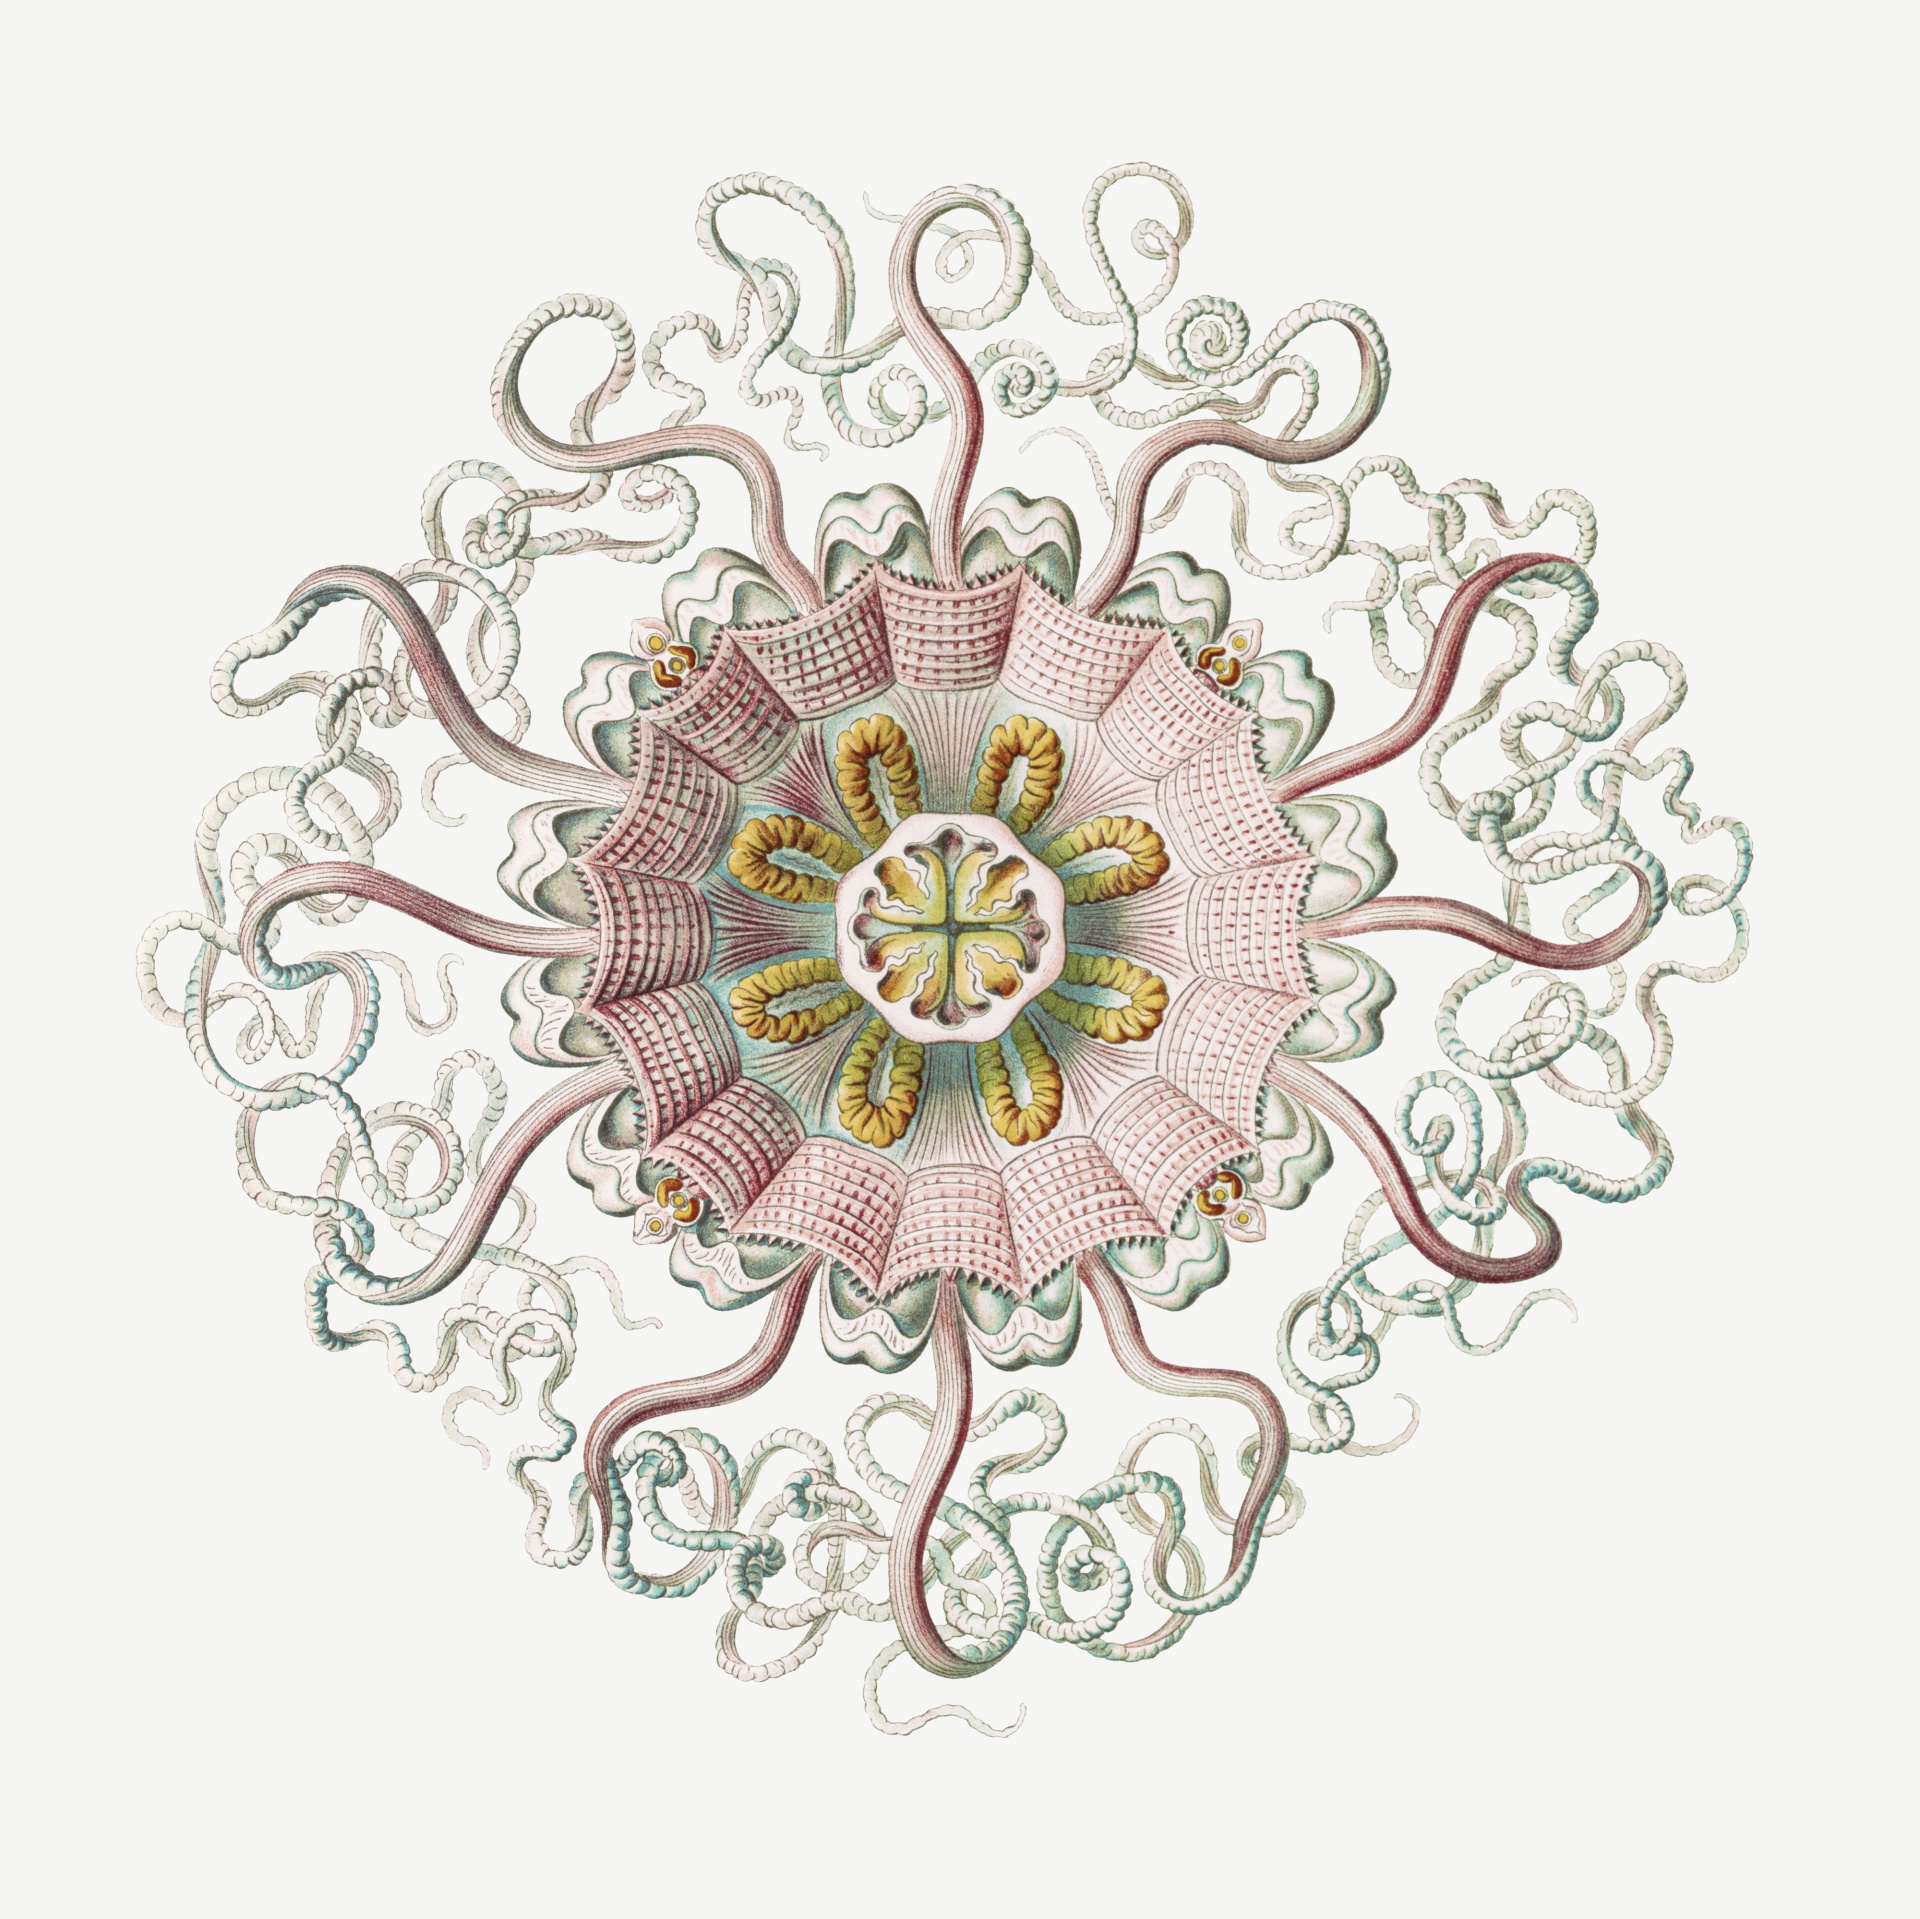 Tengeri medúza vintage art